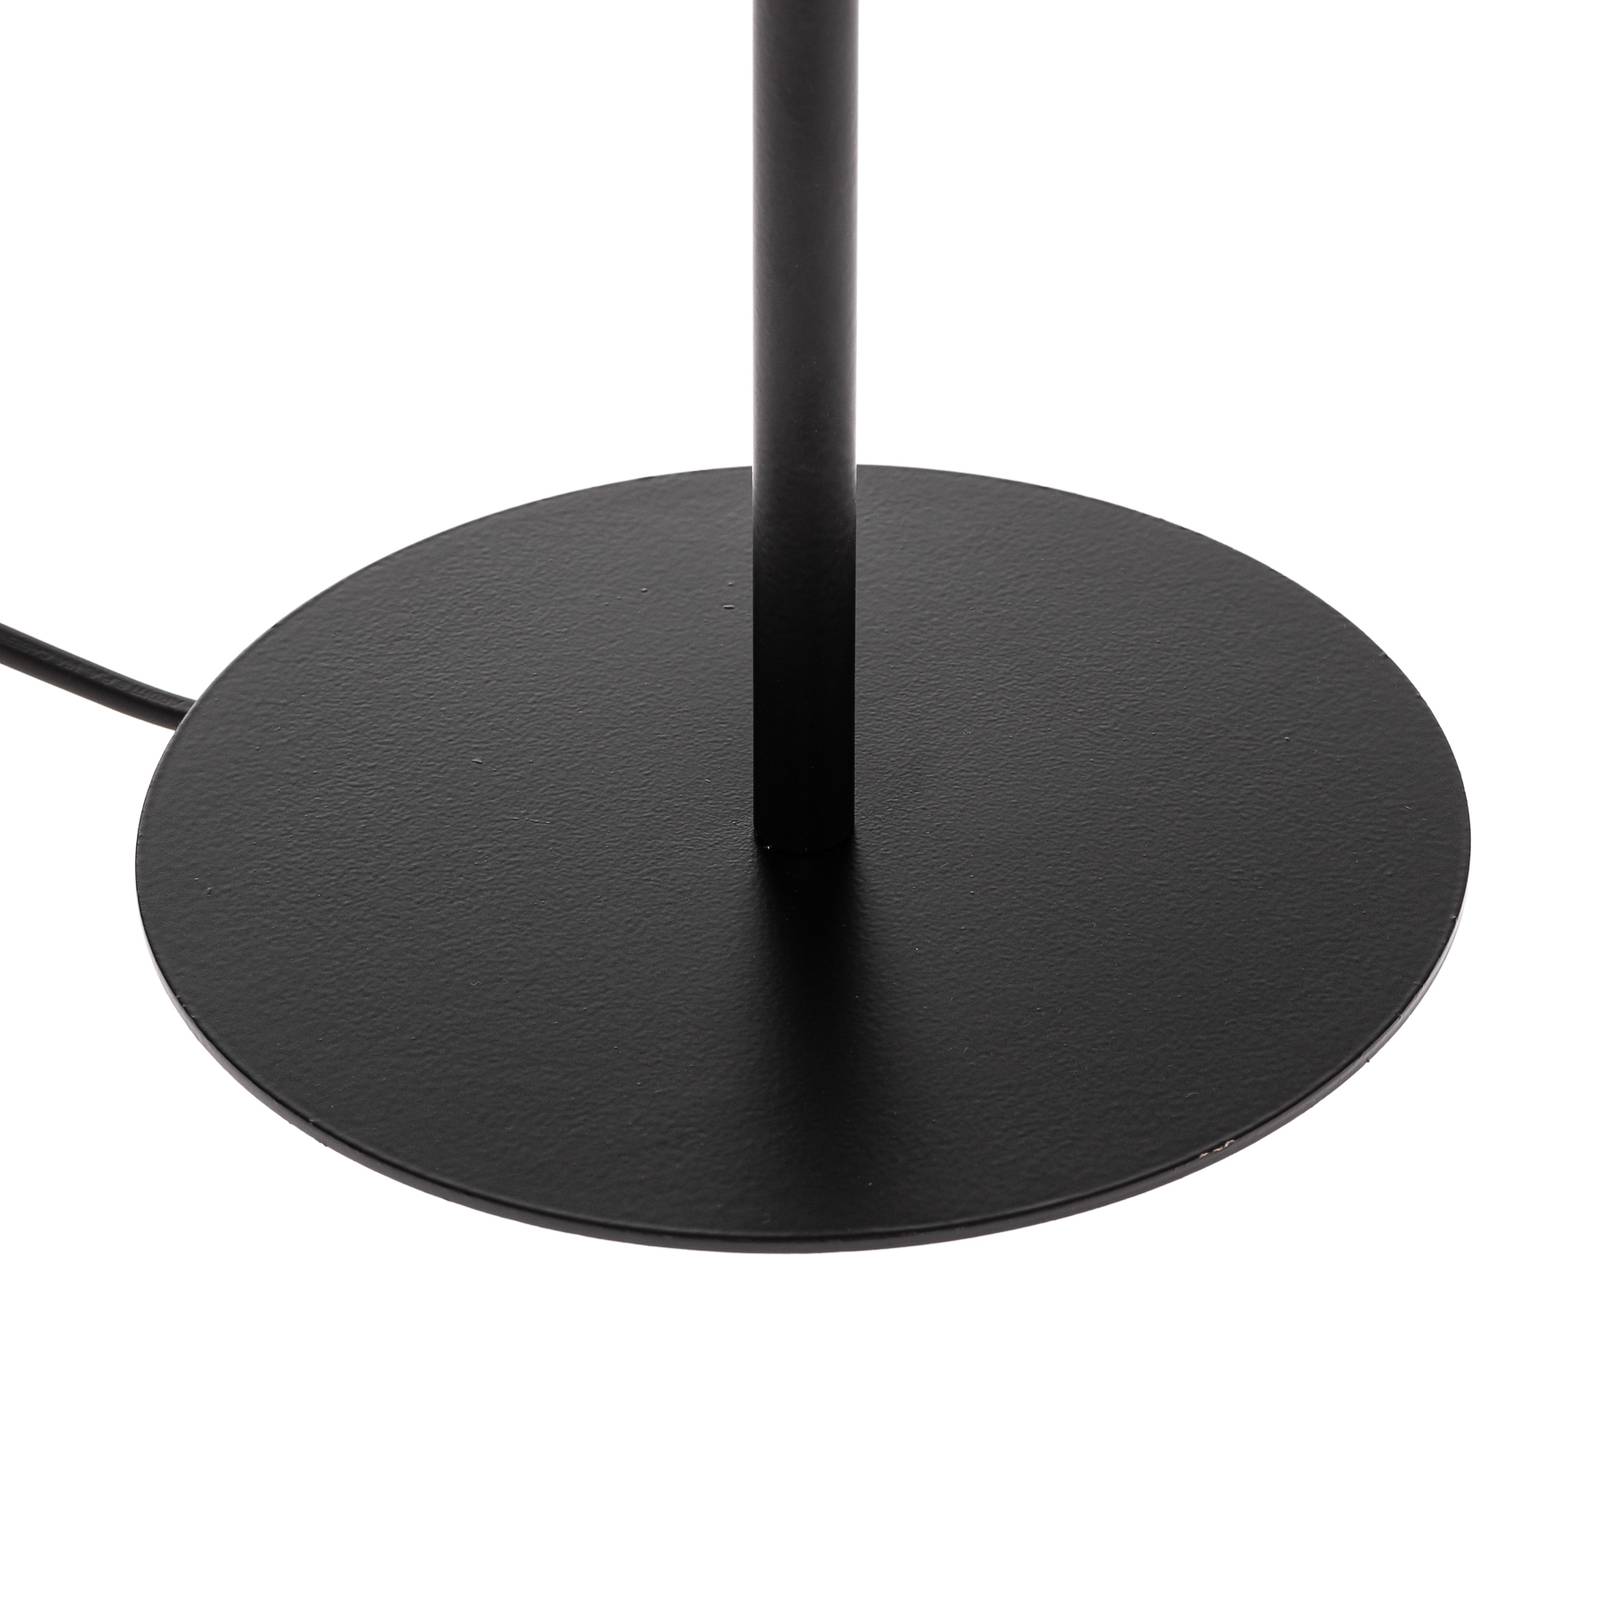 Arden bordlampe uten skjerm svart høyde 24 cm